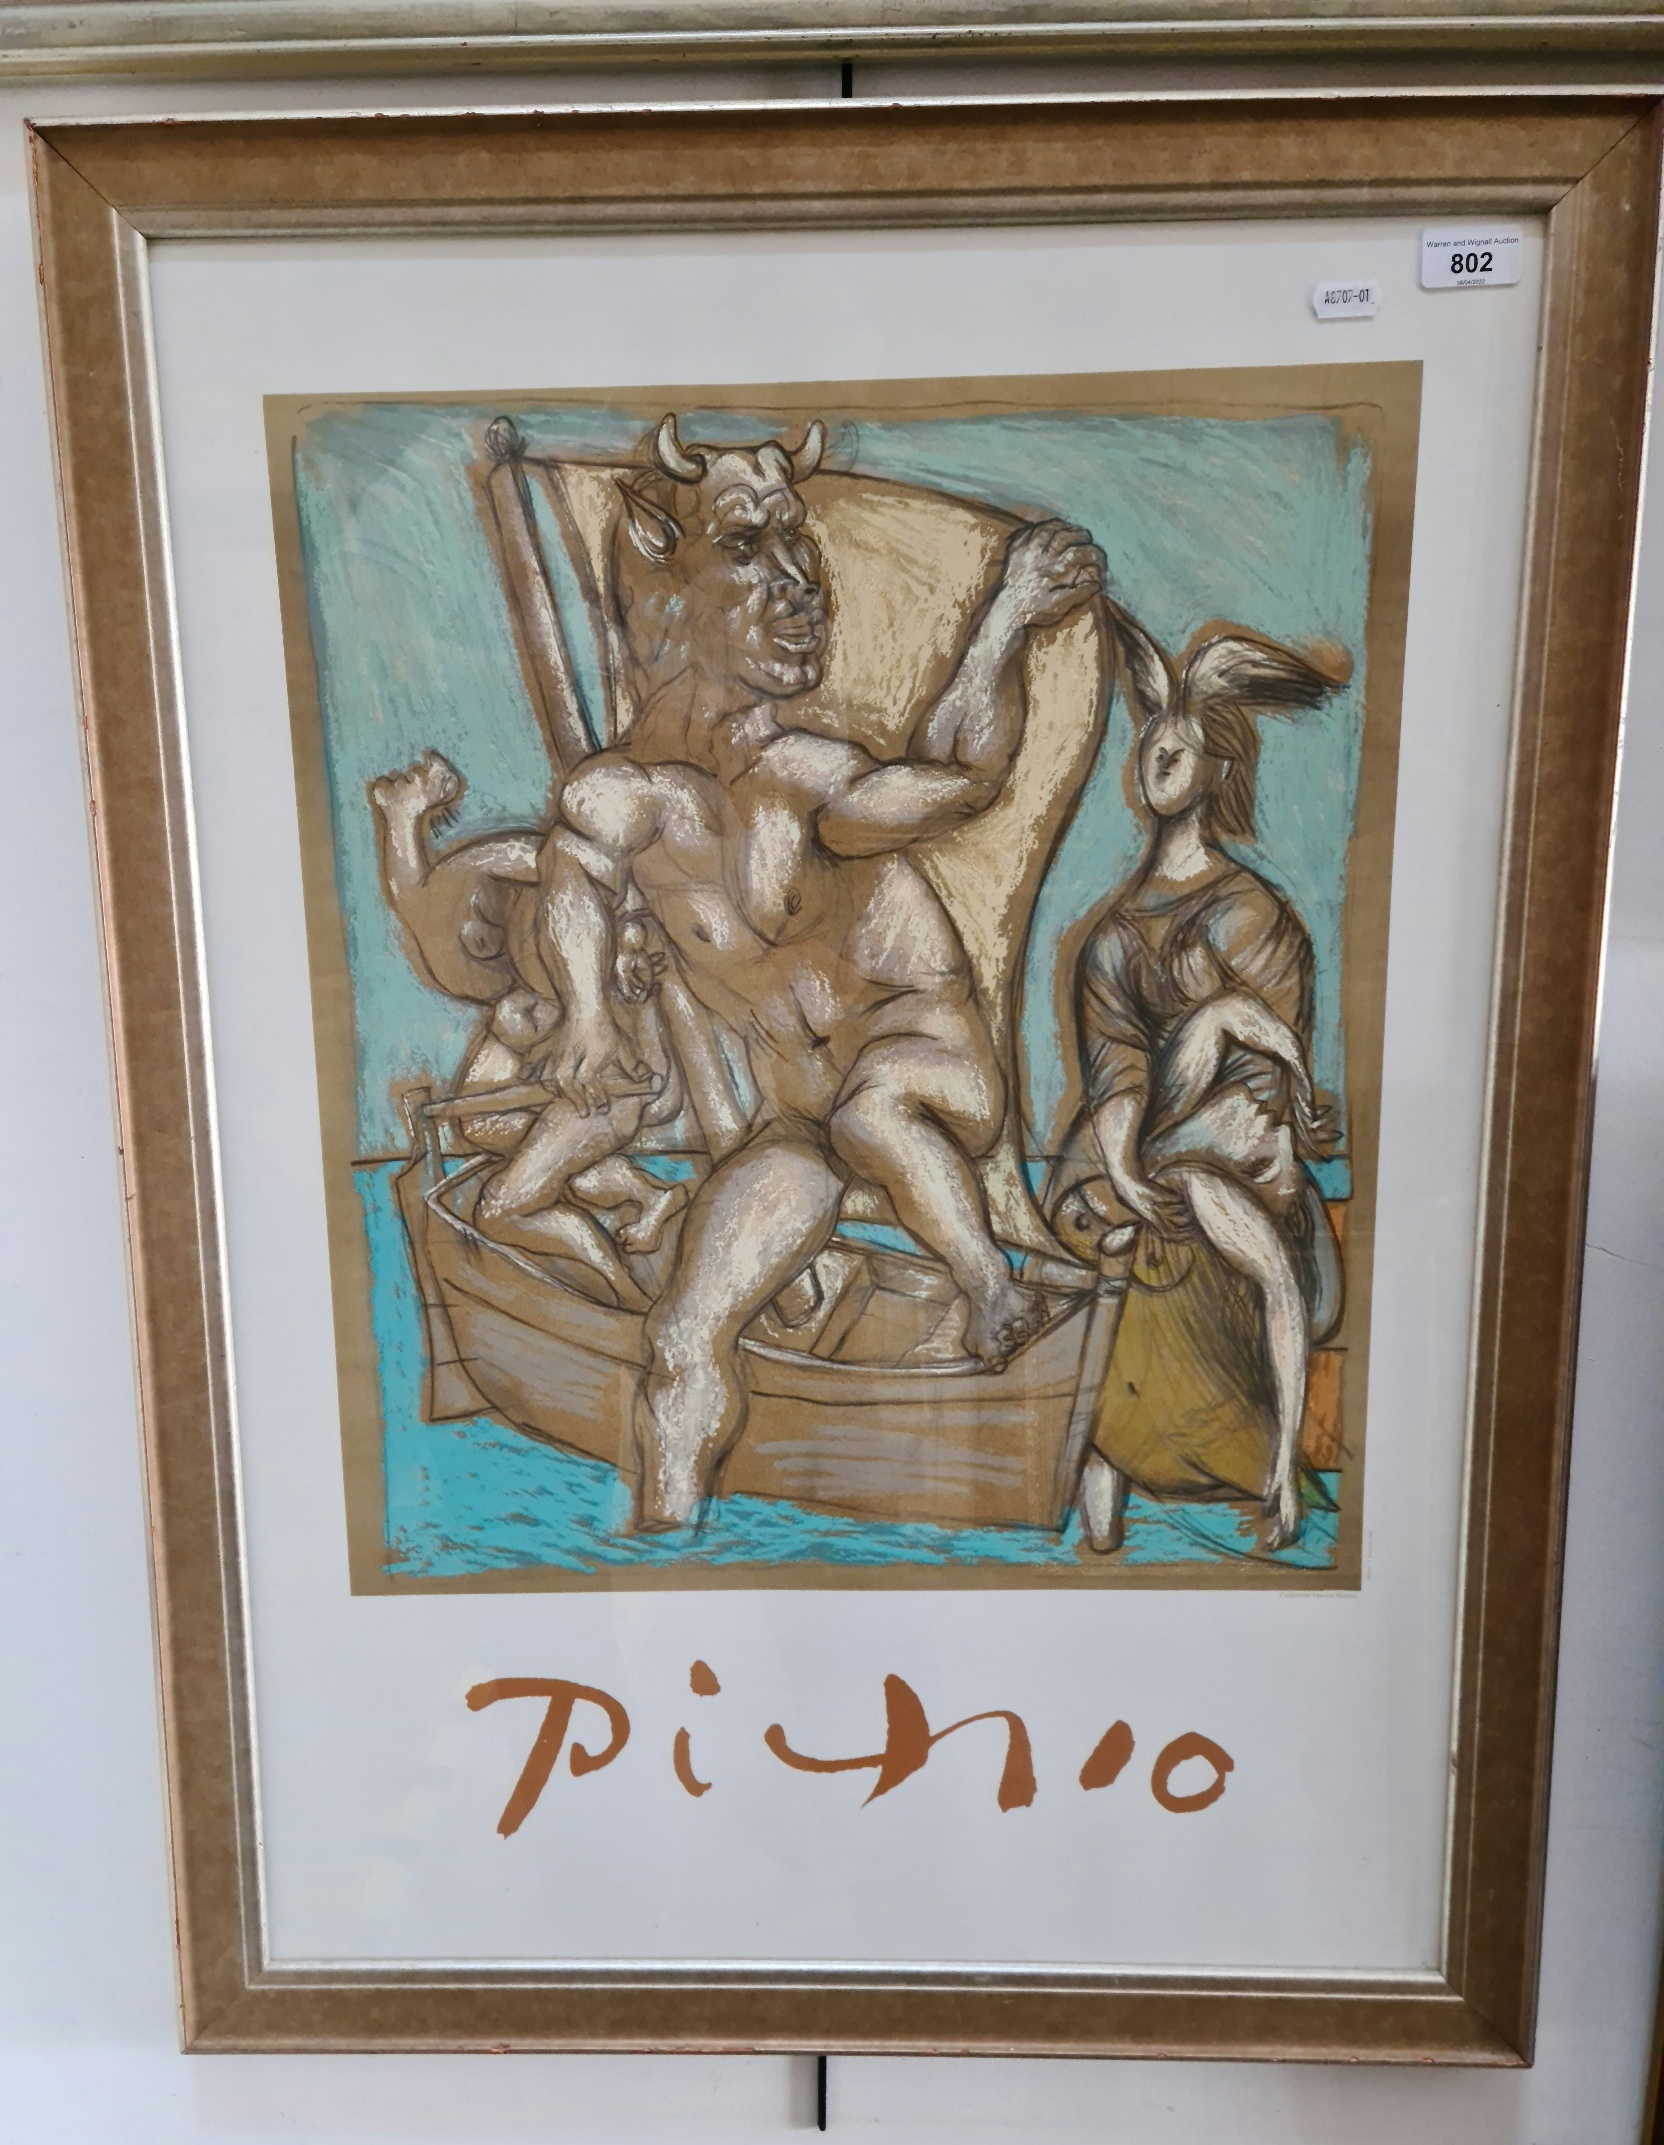 After Pablo Picasso, "Femme et Minotaure", colour lithograph, 46cm x 51cm, Collection Marina